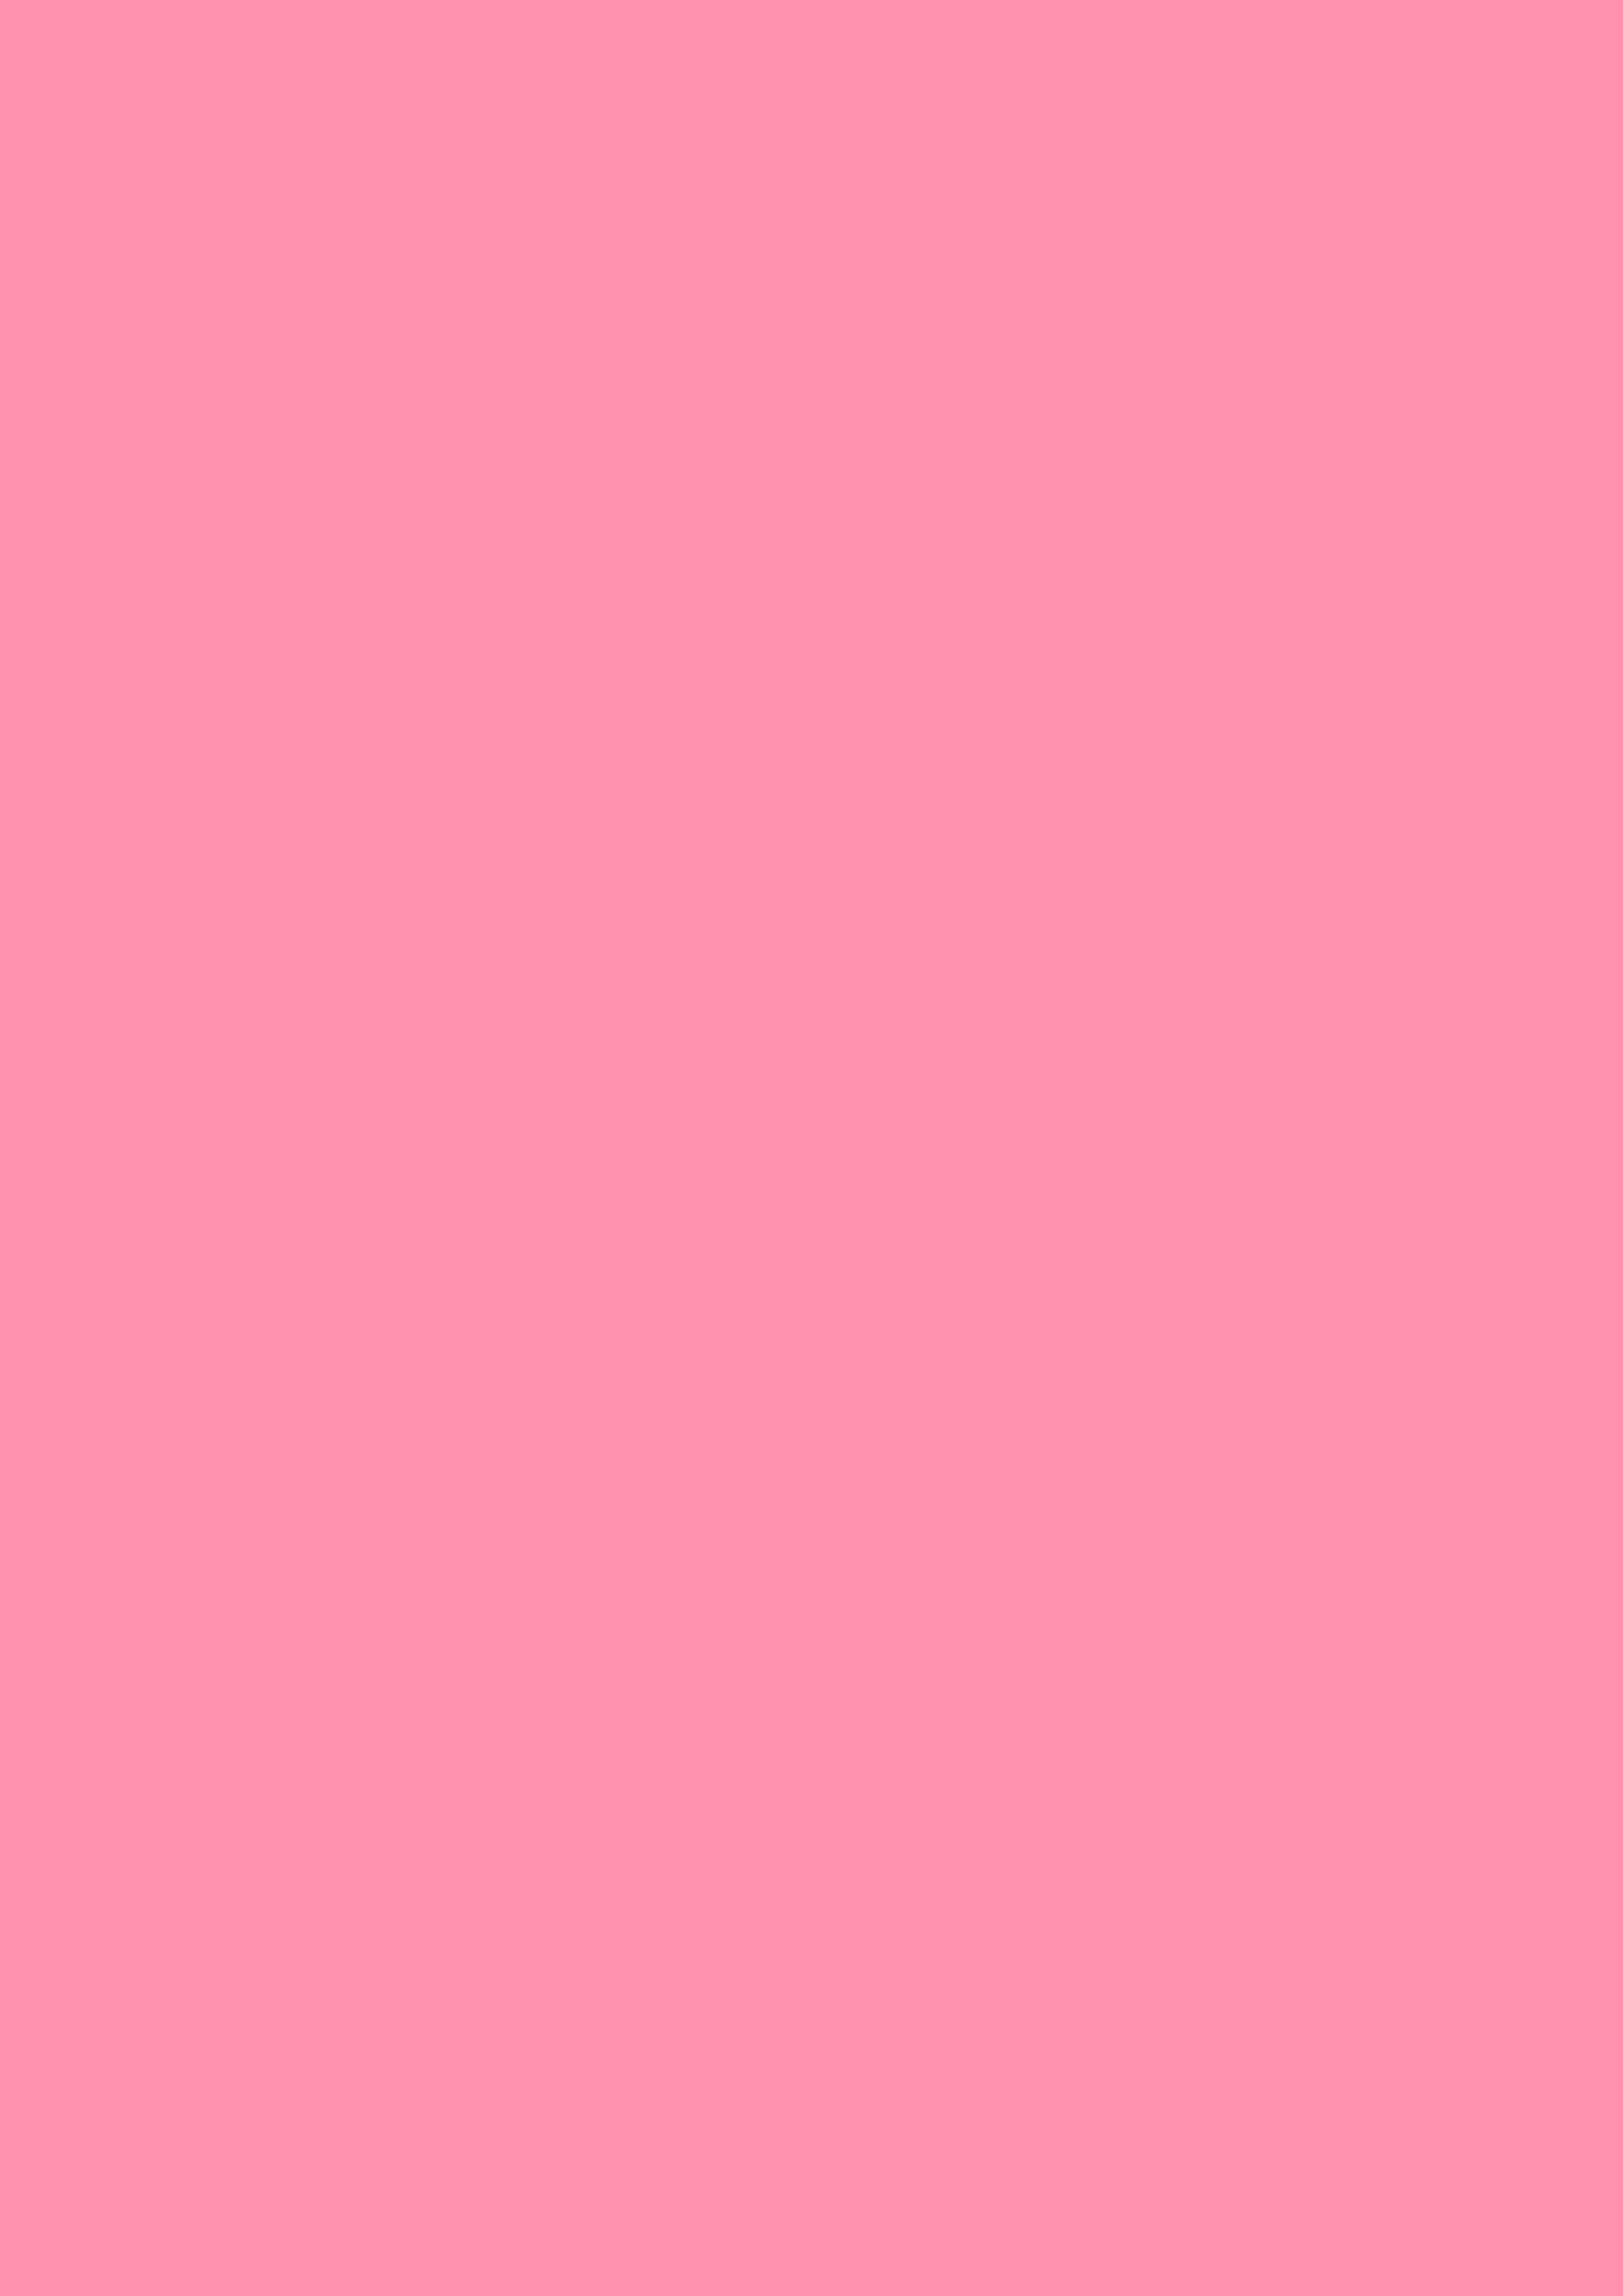 2480x3508 Baker-Miller Pink Solid Color Background